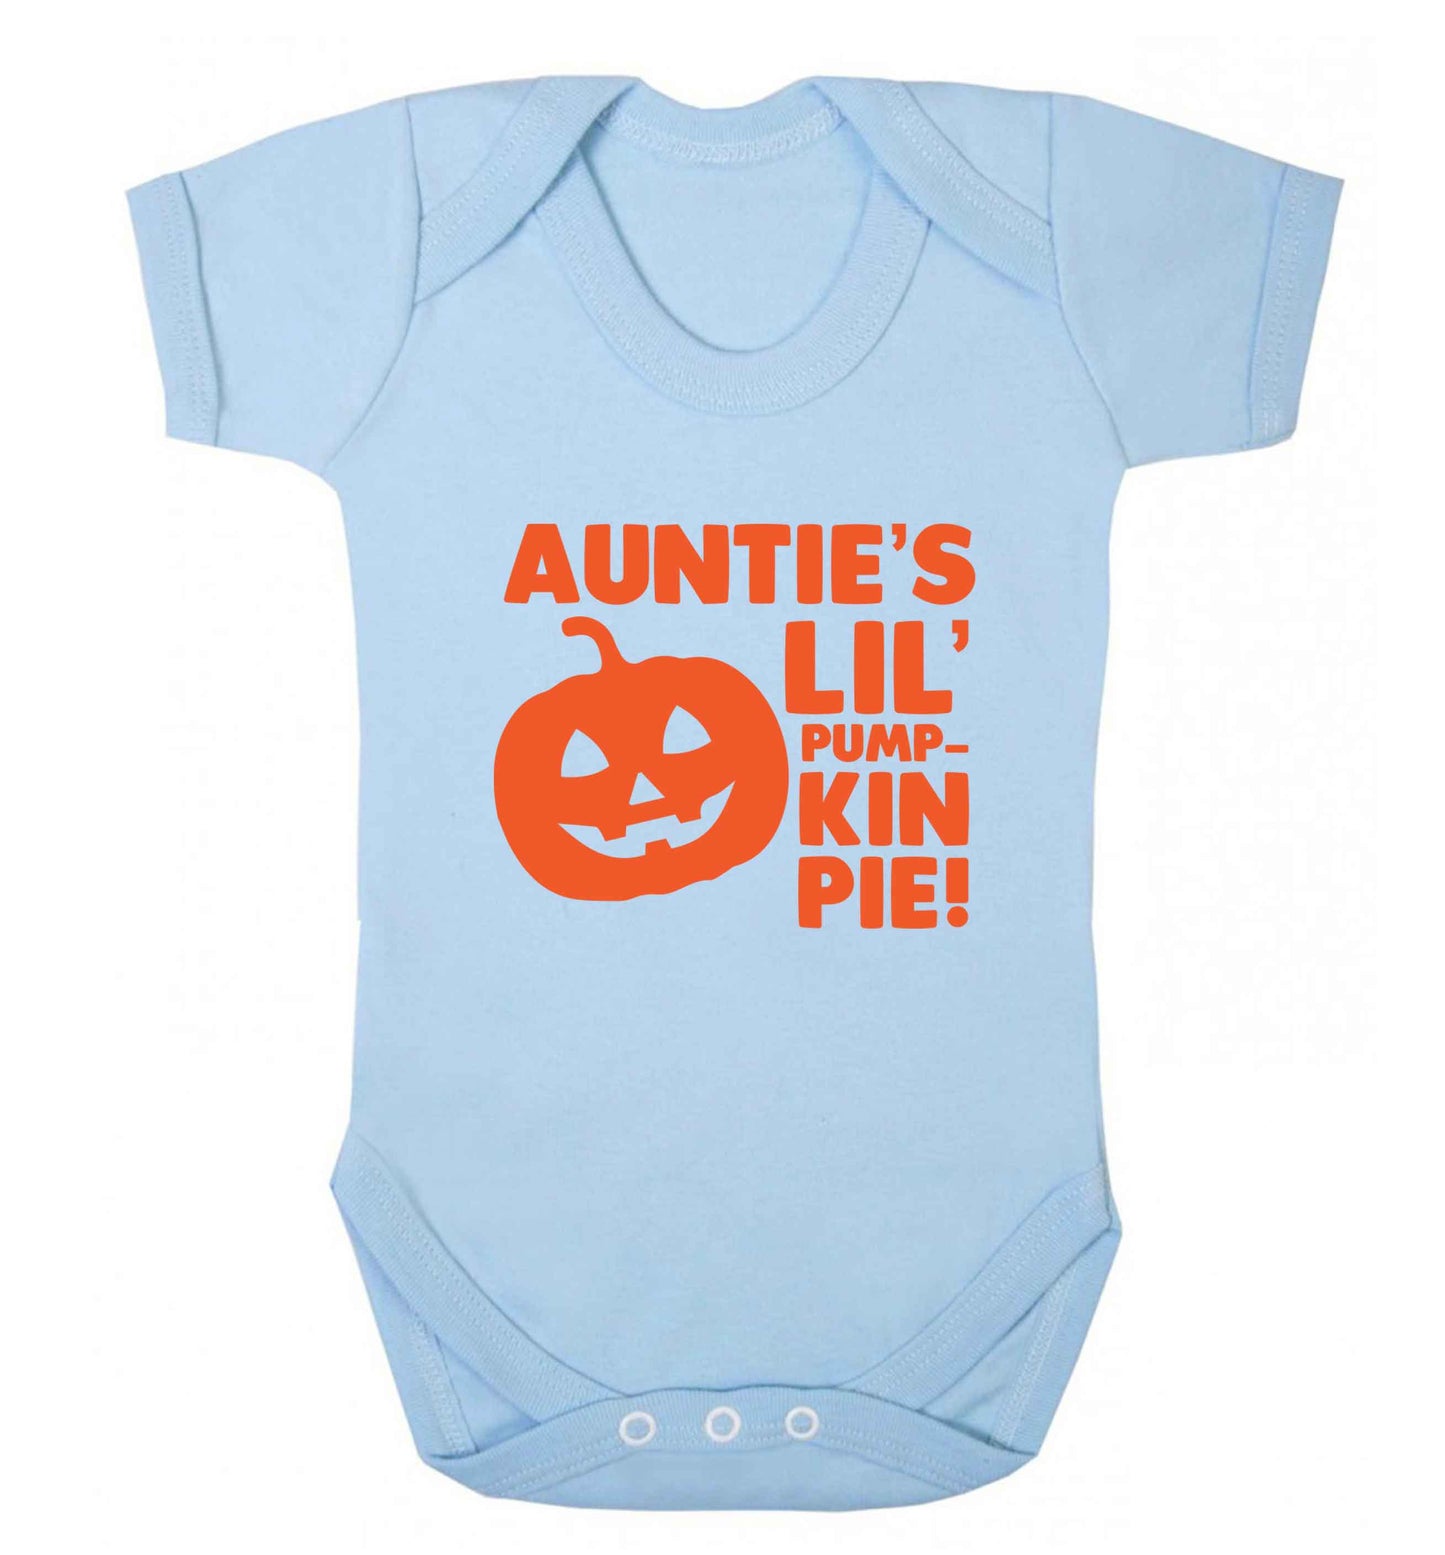 Auntie's lil' pumpkin pie baby vest pale blue 18-24 months